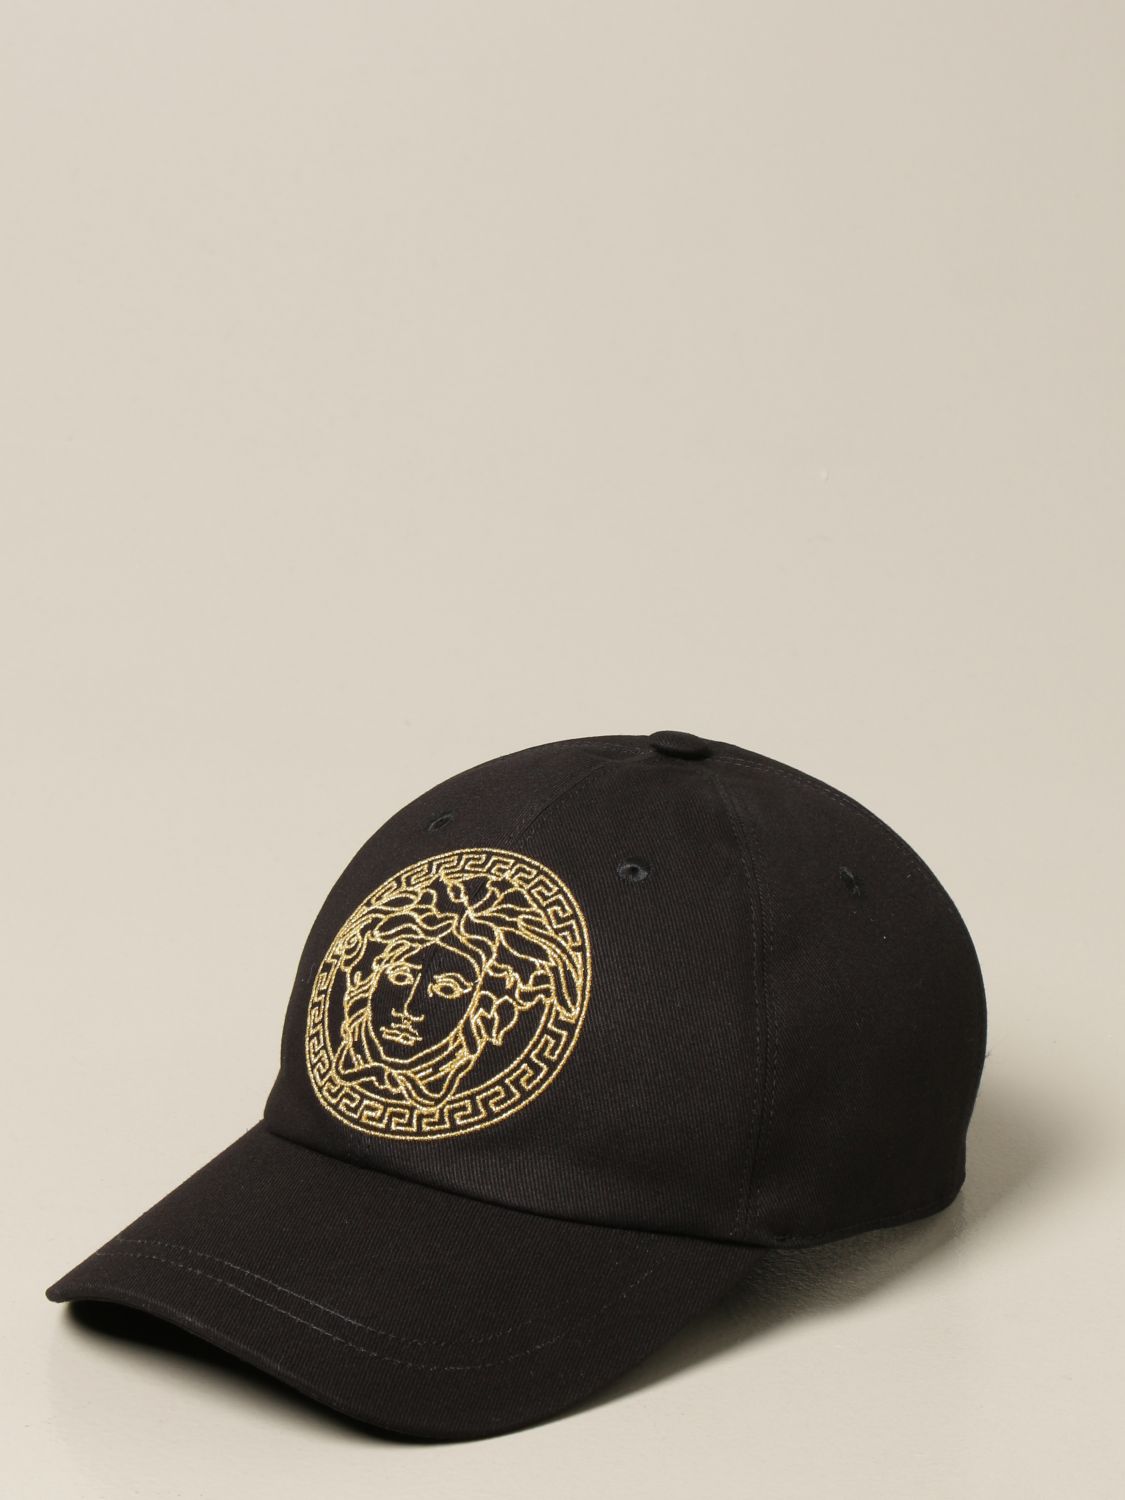 versace black hat